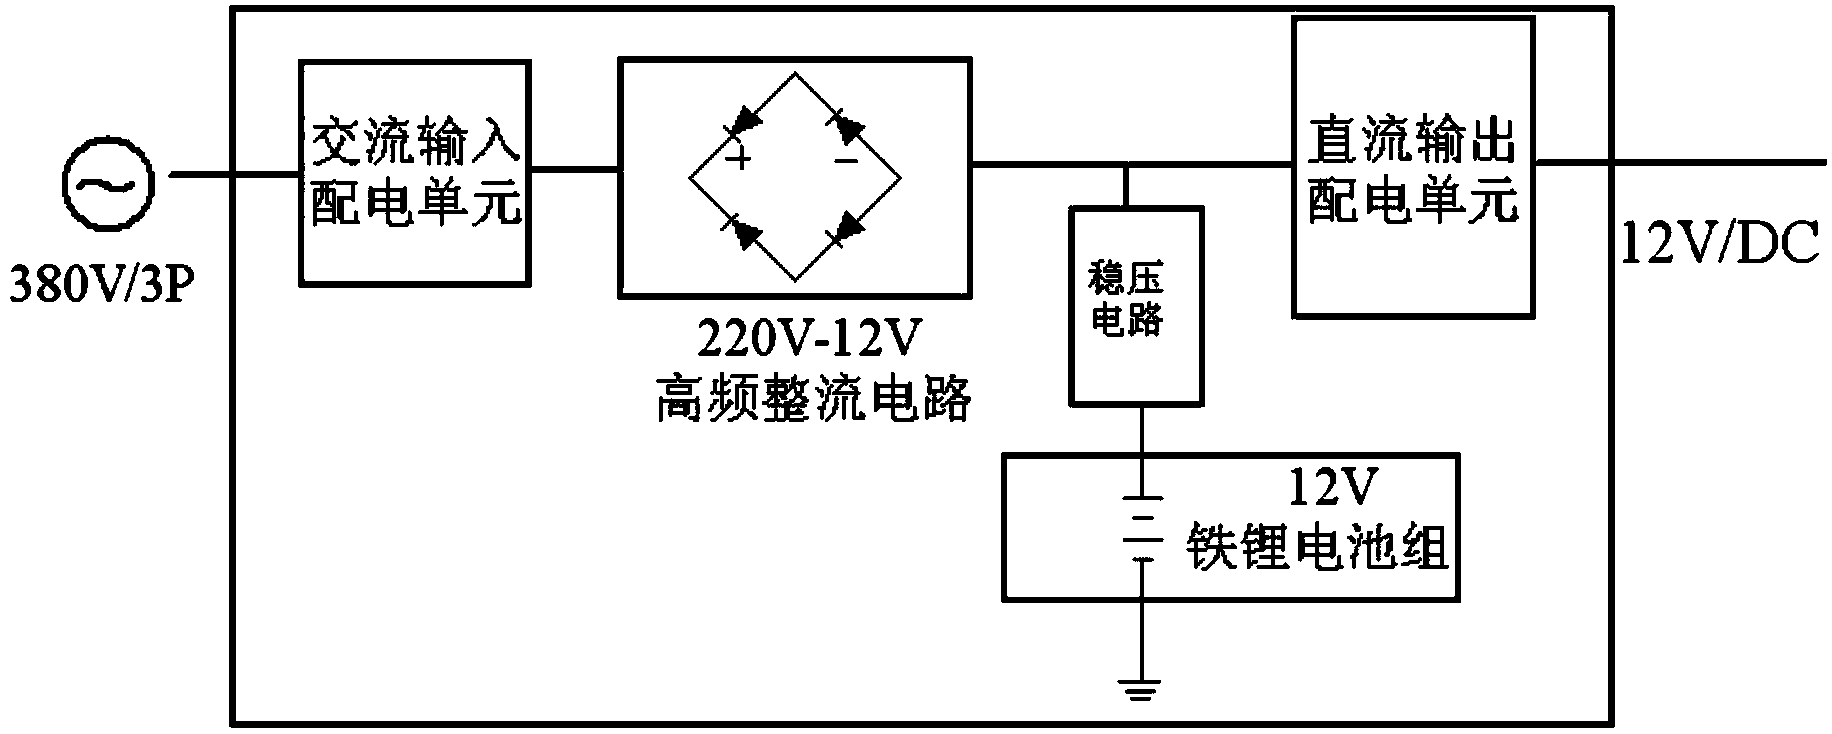 Uninterrupted 12V direct-current power system